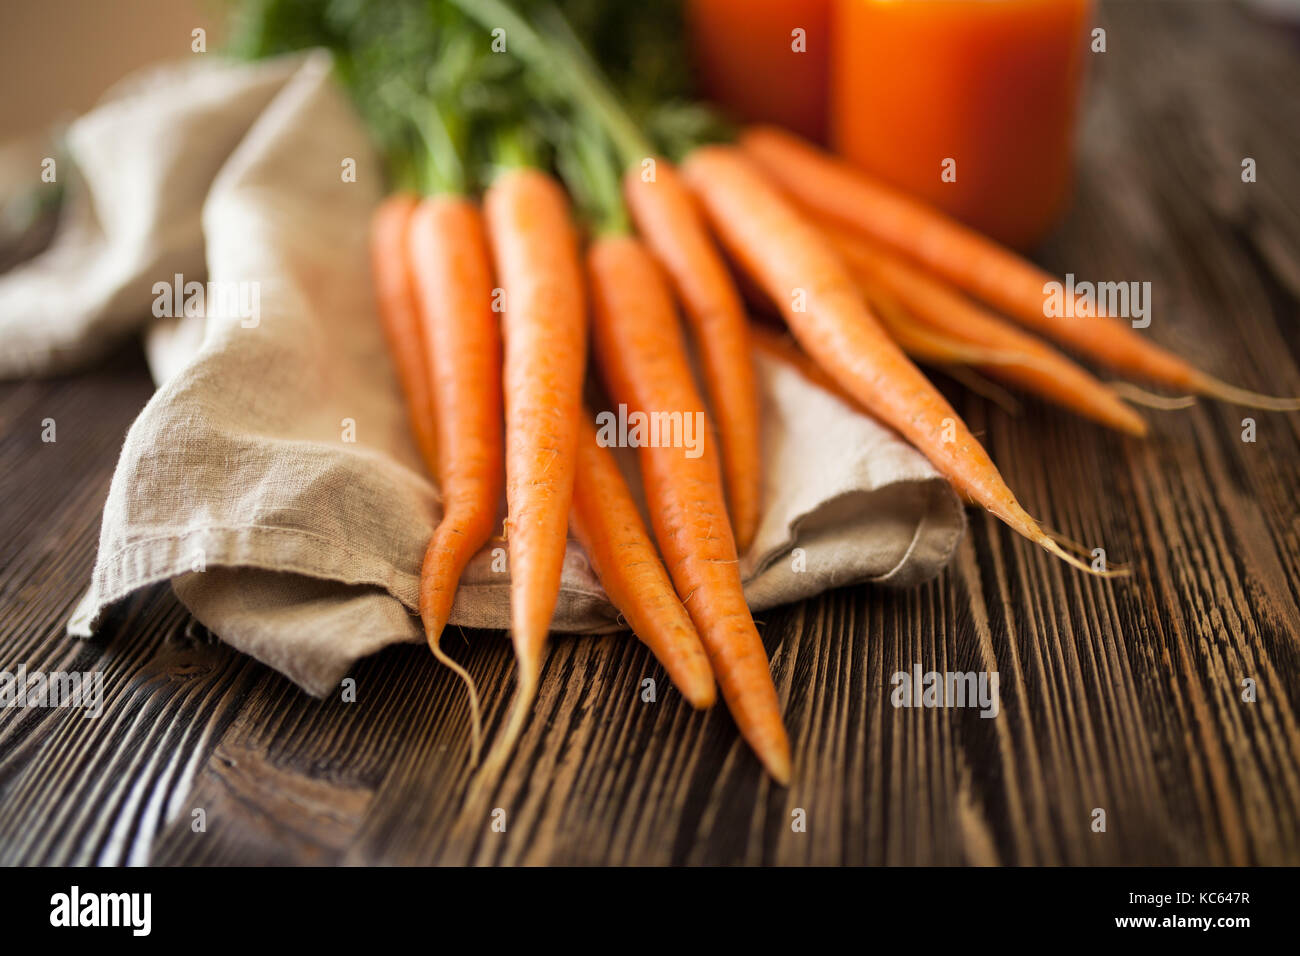 Le jus de carotte bio frais Banque D'Images